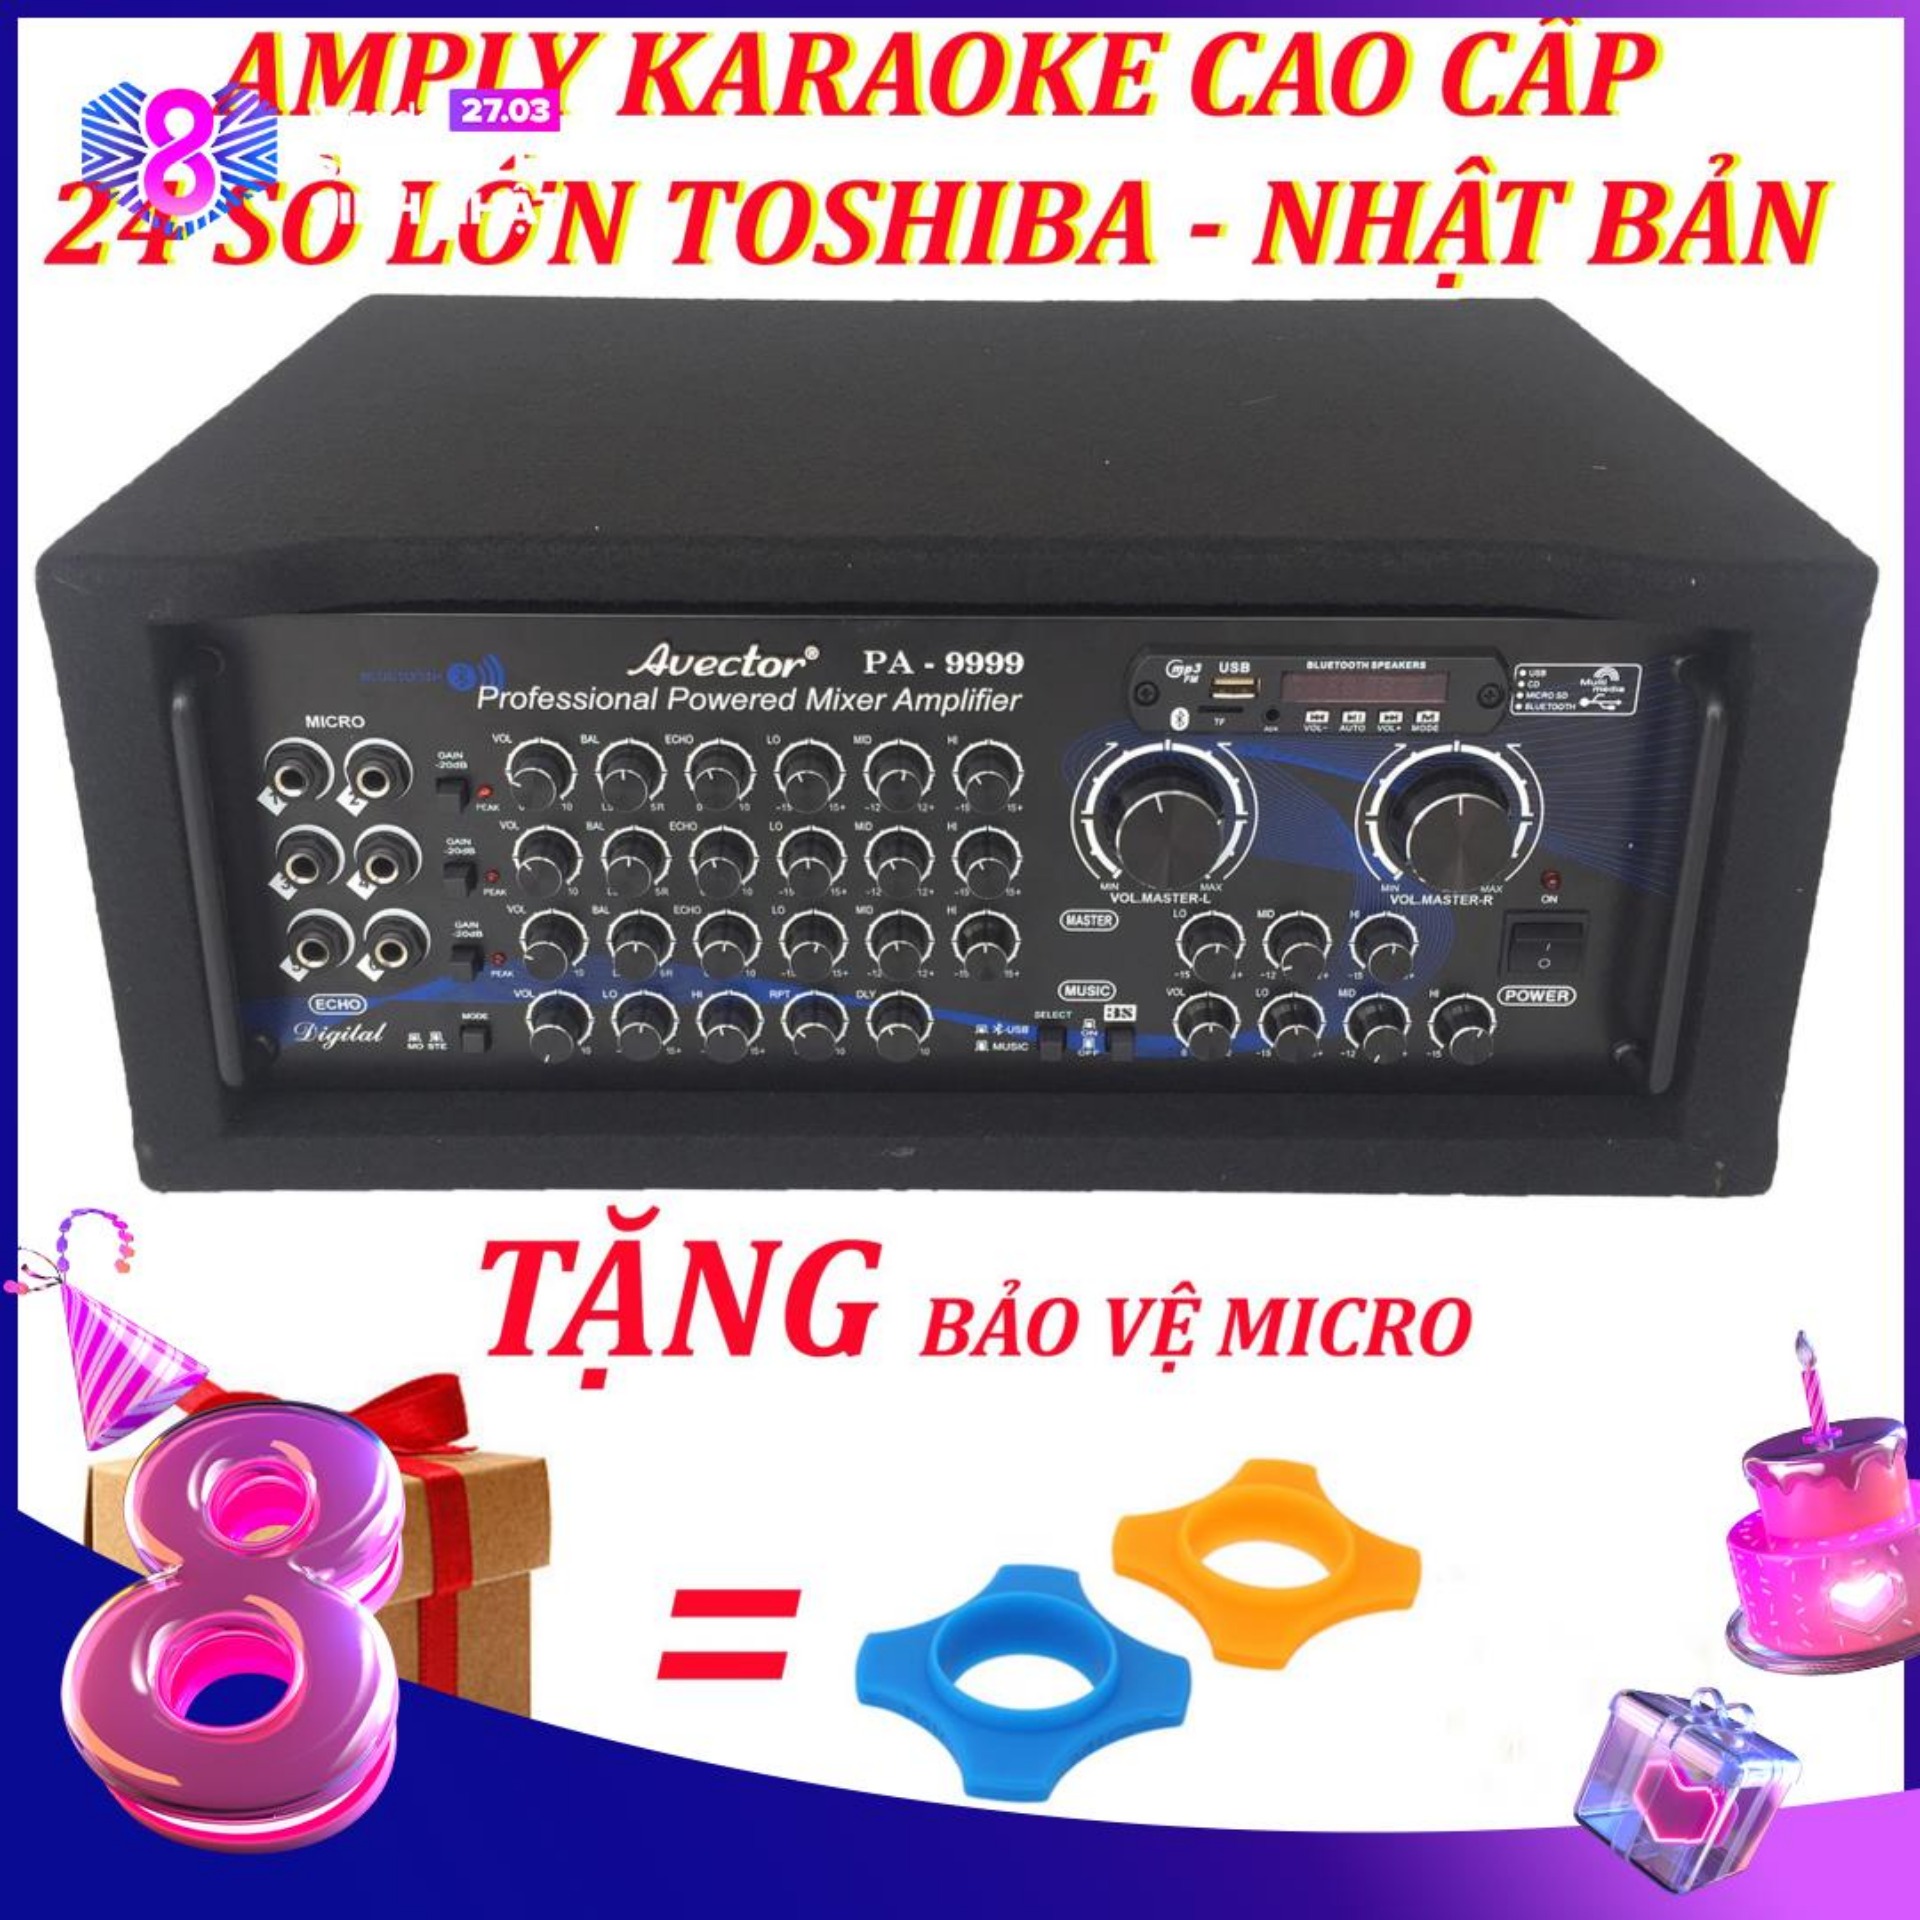 [Trả góp 0%]Amply karaoke gia đình - Amply bluetooth - amply sân khấu - amply nghe nhạc cao cấp công suất lớn Avector PA-9999 24 Sò toshiba nhật bản chính hãng TẶNG BẢO VỆ MICRO